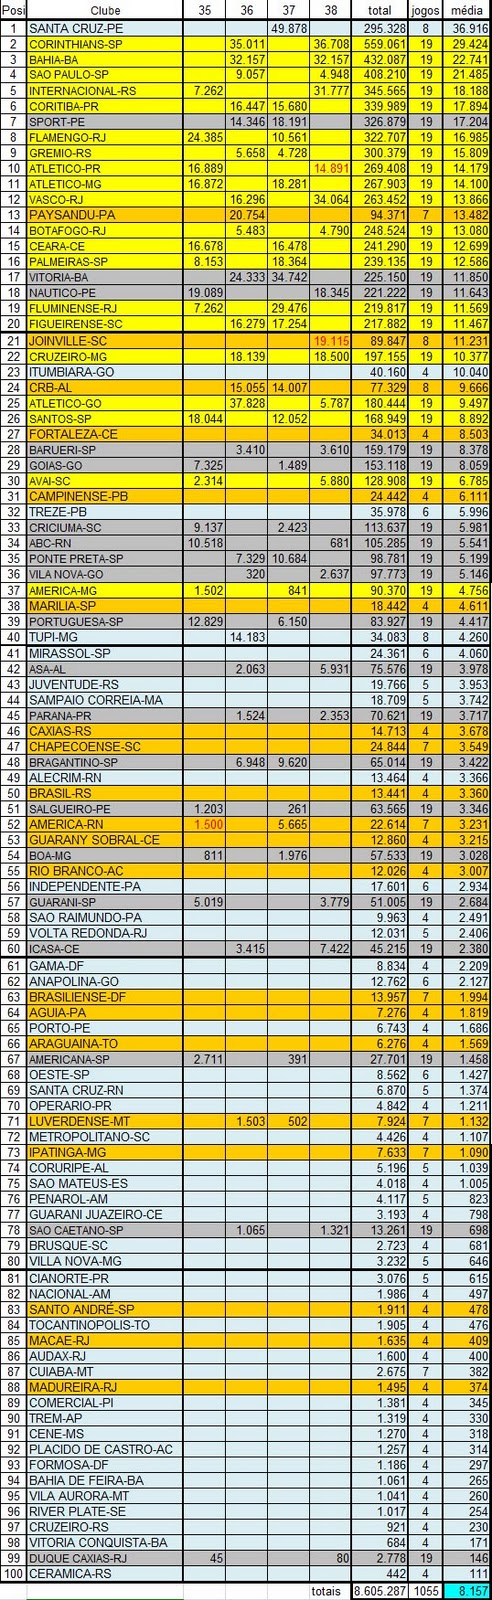 Ranking de times da Série B: temporada até março, tatiquês (e outros  papos)